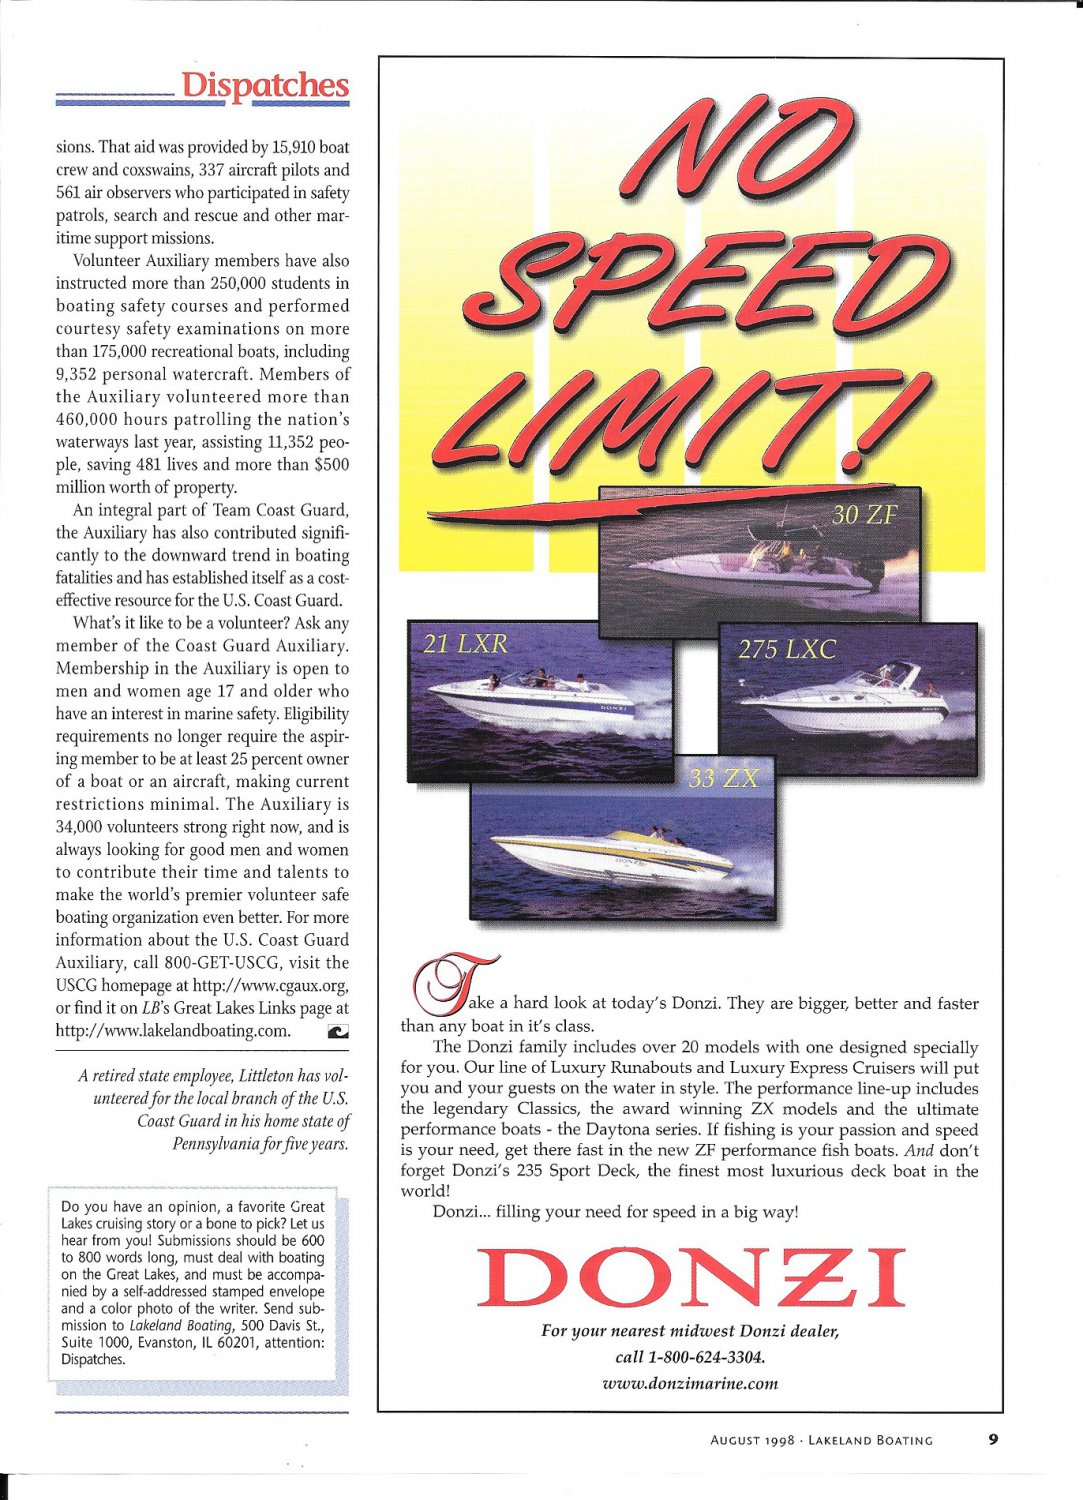 1998 Donzi Marine Color Ad- Donzi 30 ZF- 21 LXR- 275 LXC & 33 ZX